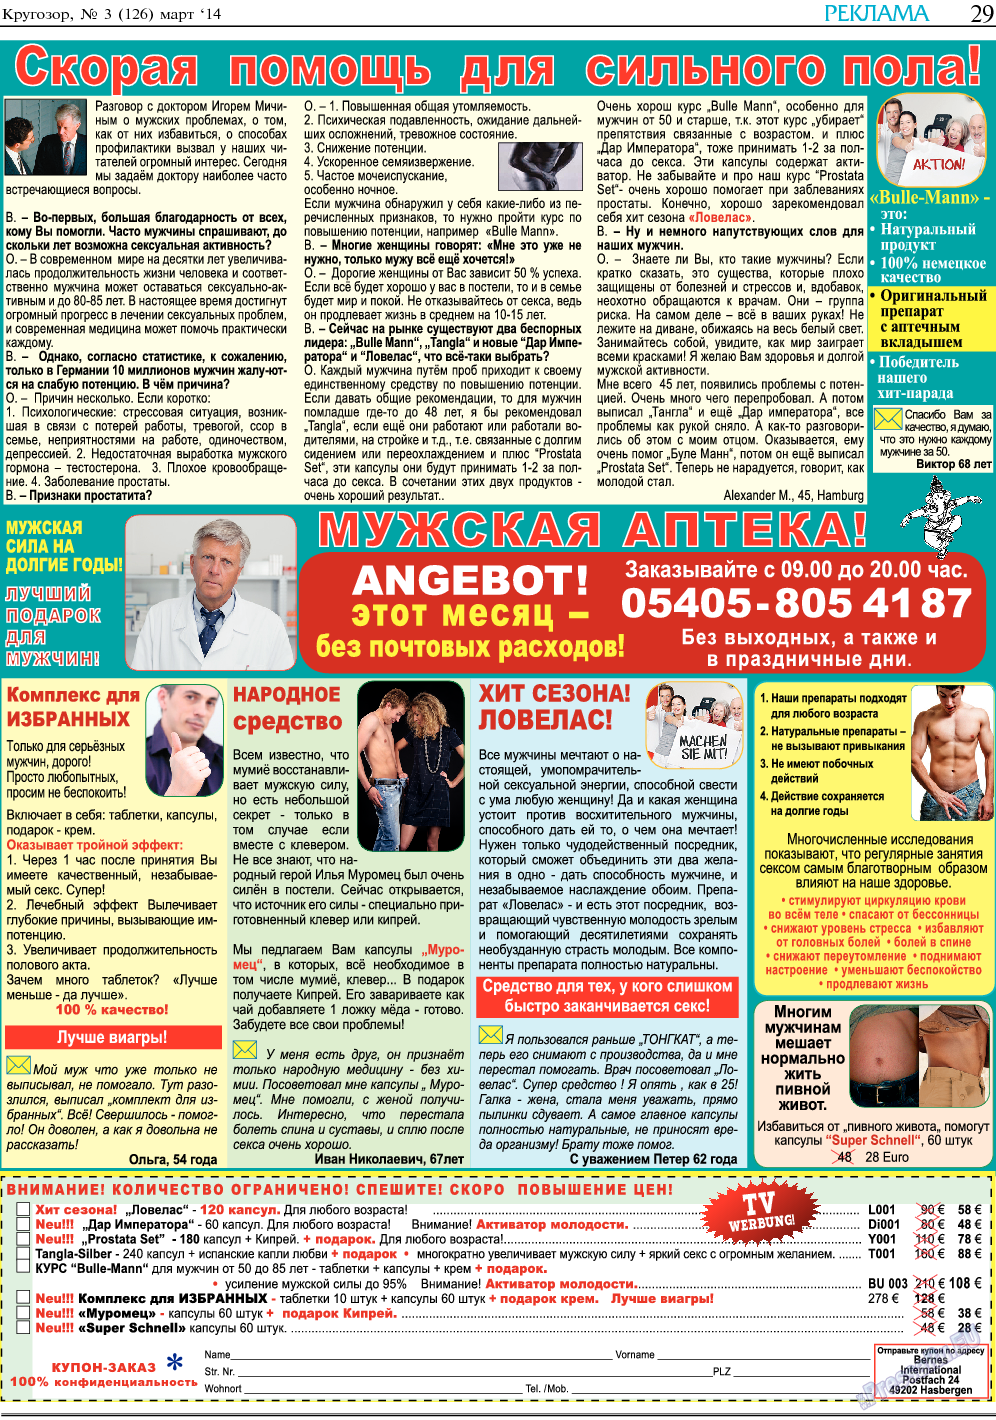 Кругозор, газета. 2014 №3 стр.29